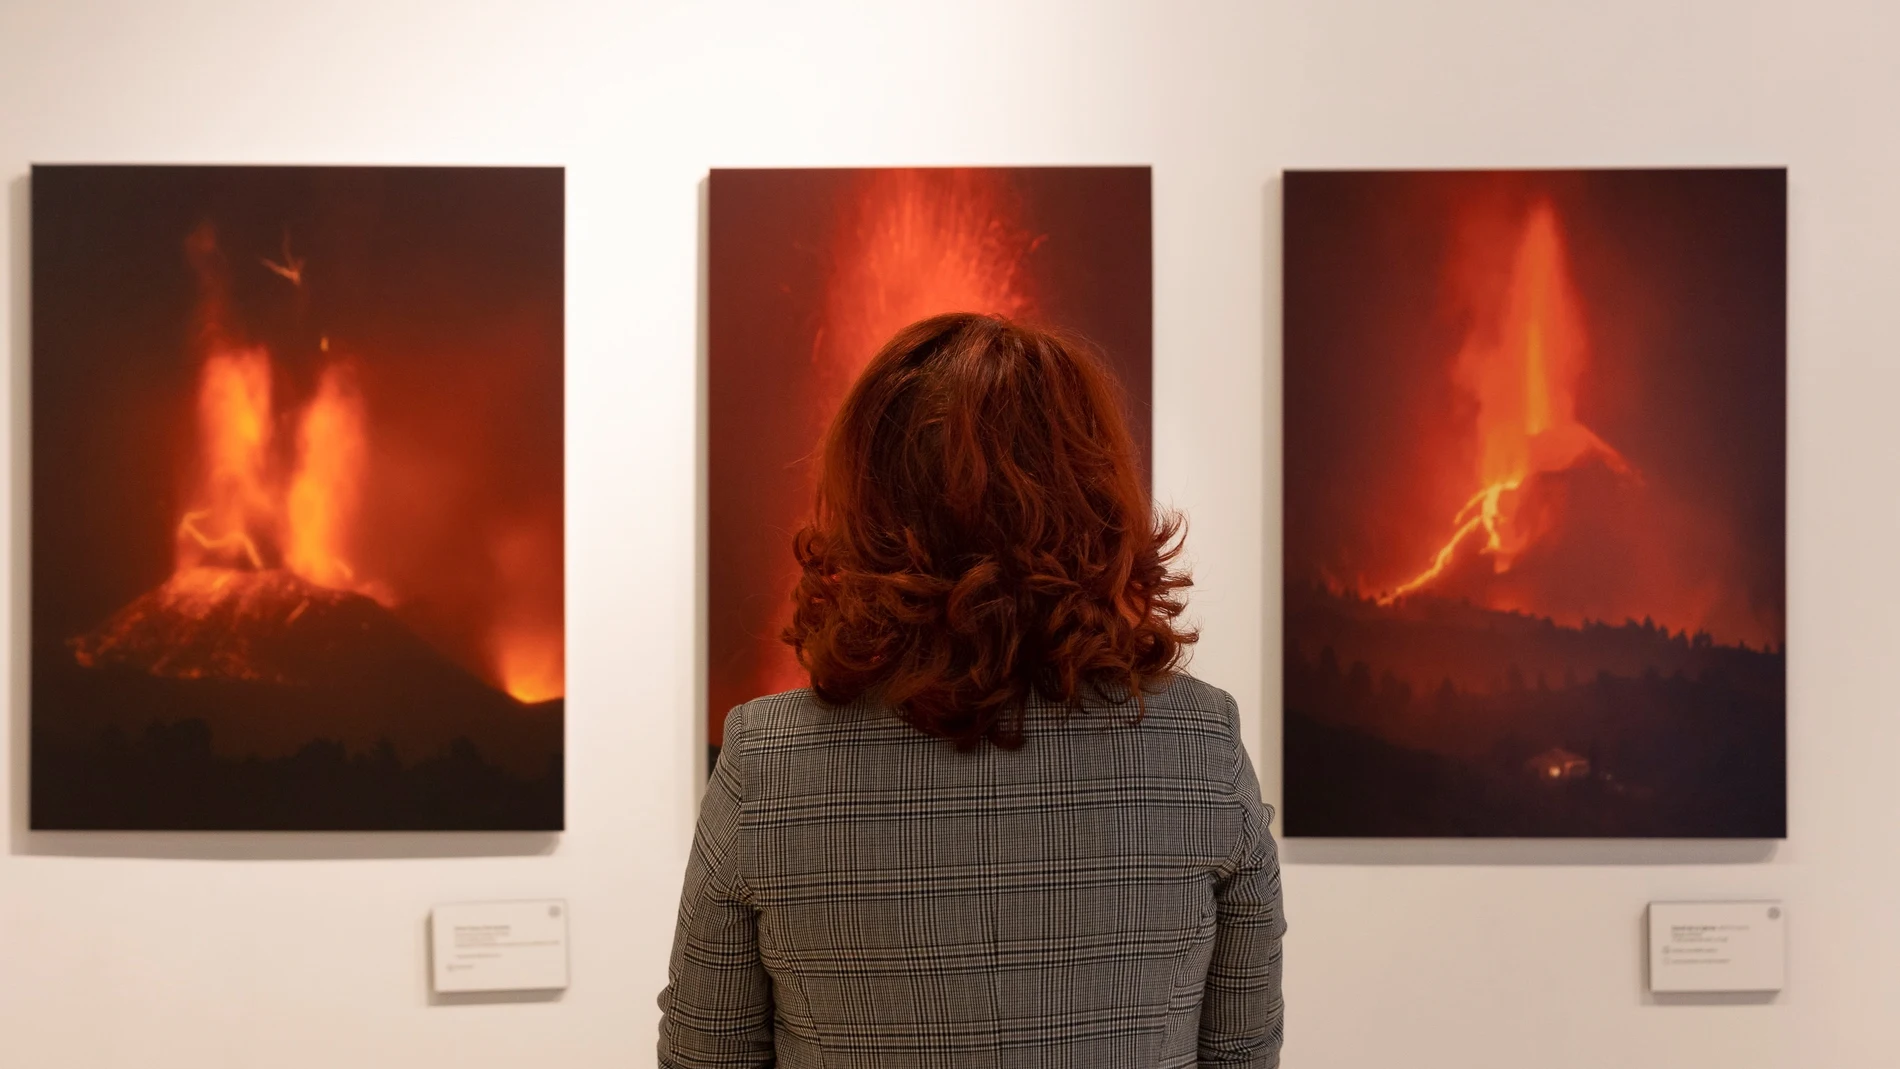 Presentación de la exposición solidaria "La Palma, volcán y vida", en la que colaboran 33 fotógrafos que han documentado la erupción de Cumbre Vieja